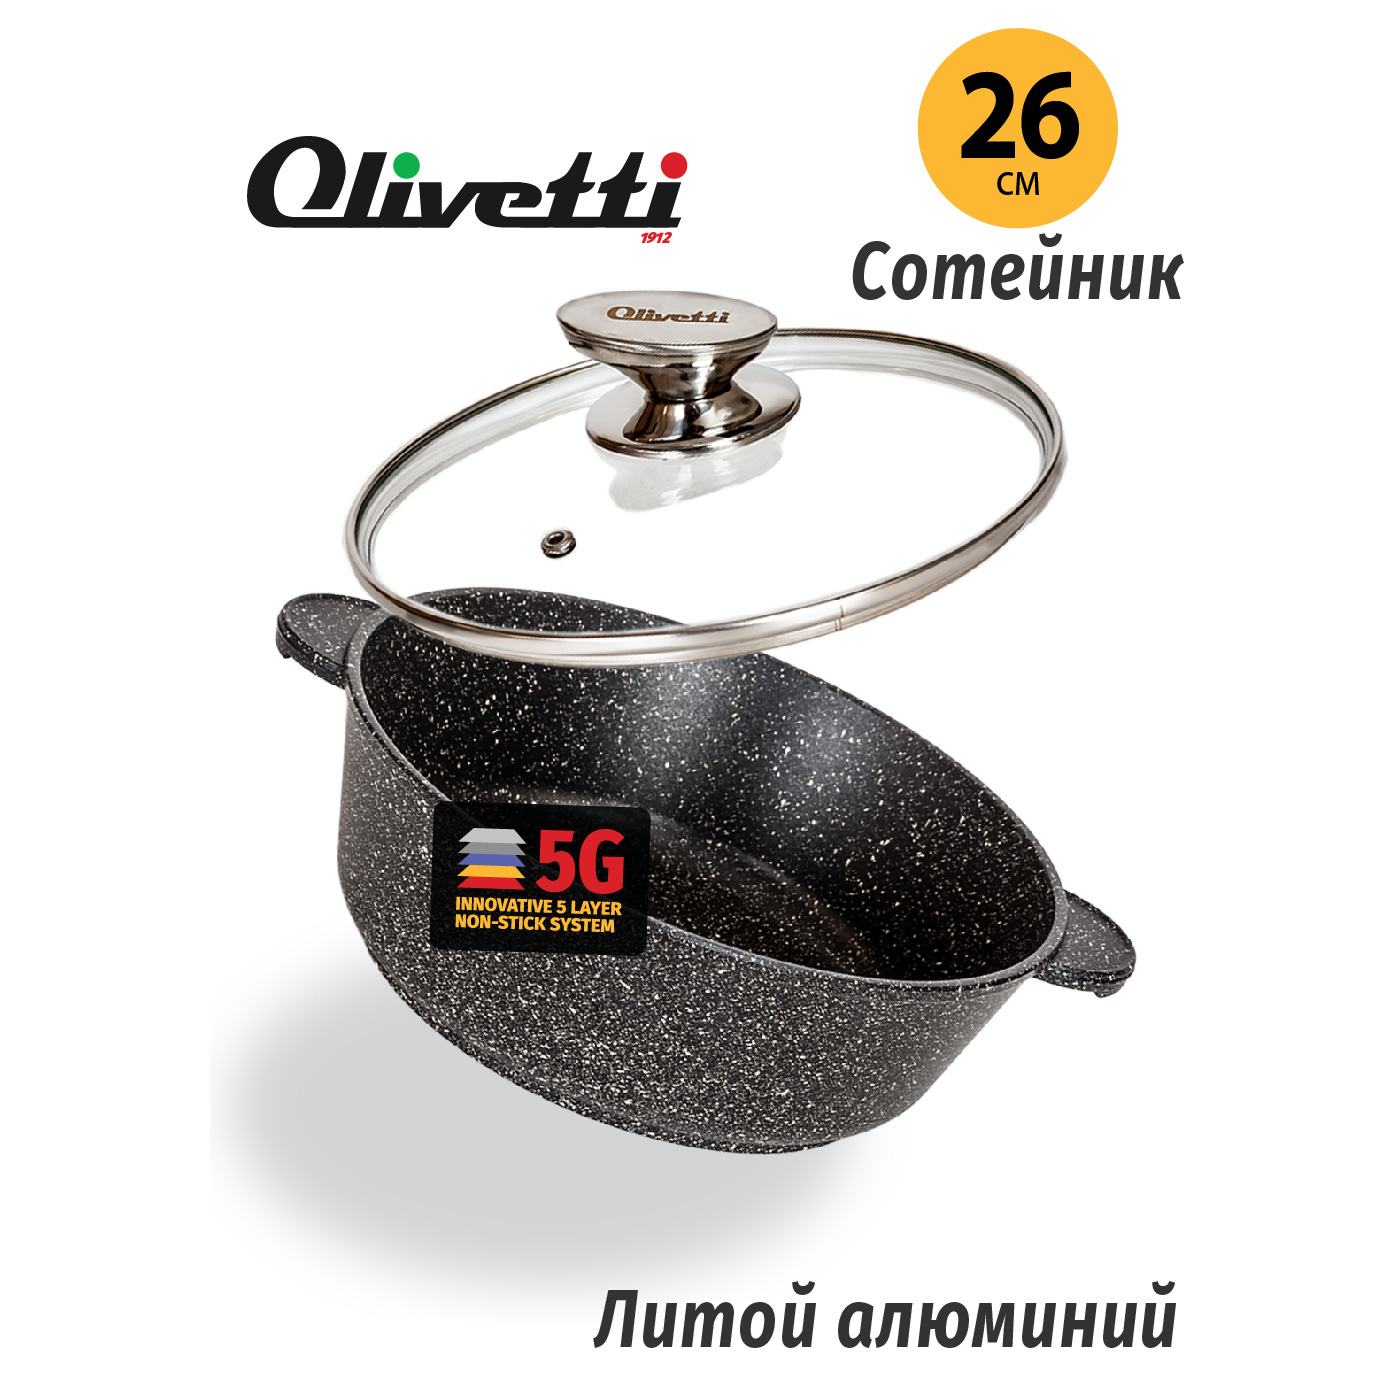 Картинка Алюминиевый сотейник Olivetti SP726L 26 см/3 л по разумной цене купить в интернет магазине mall.su